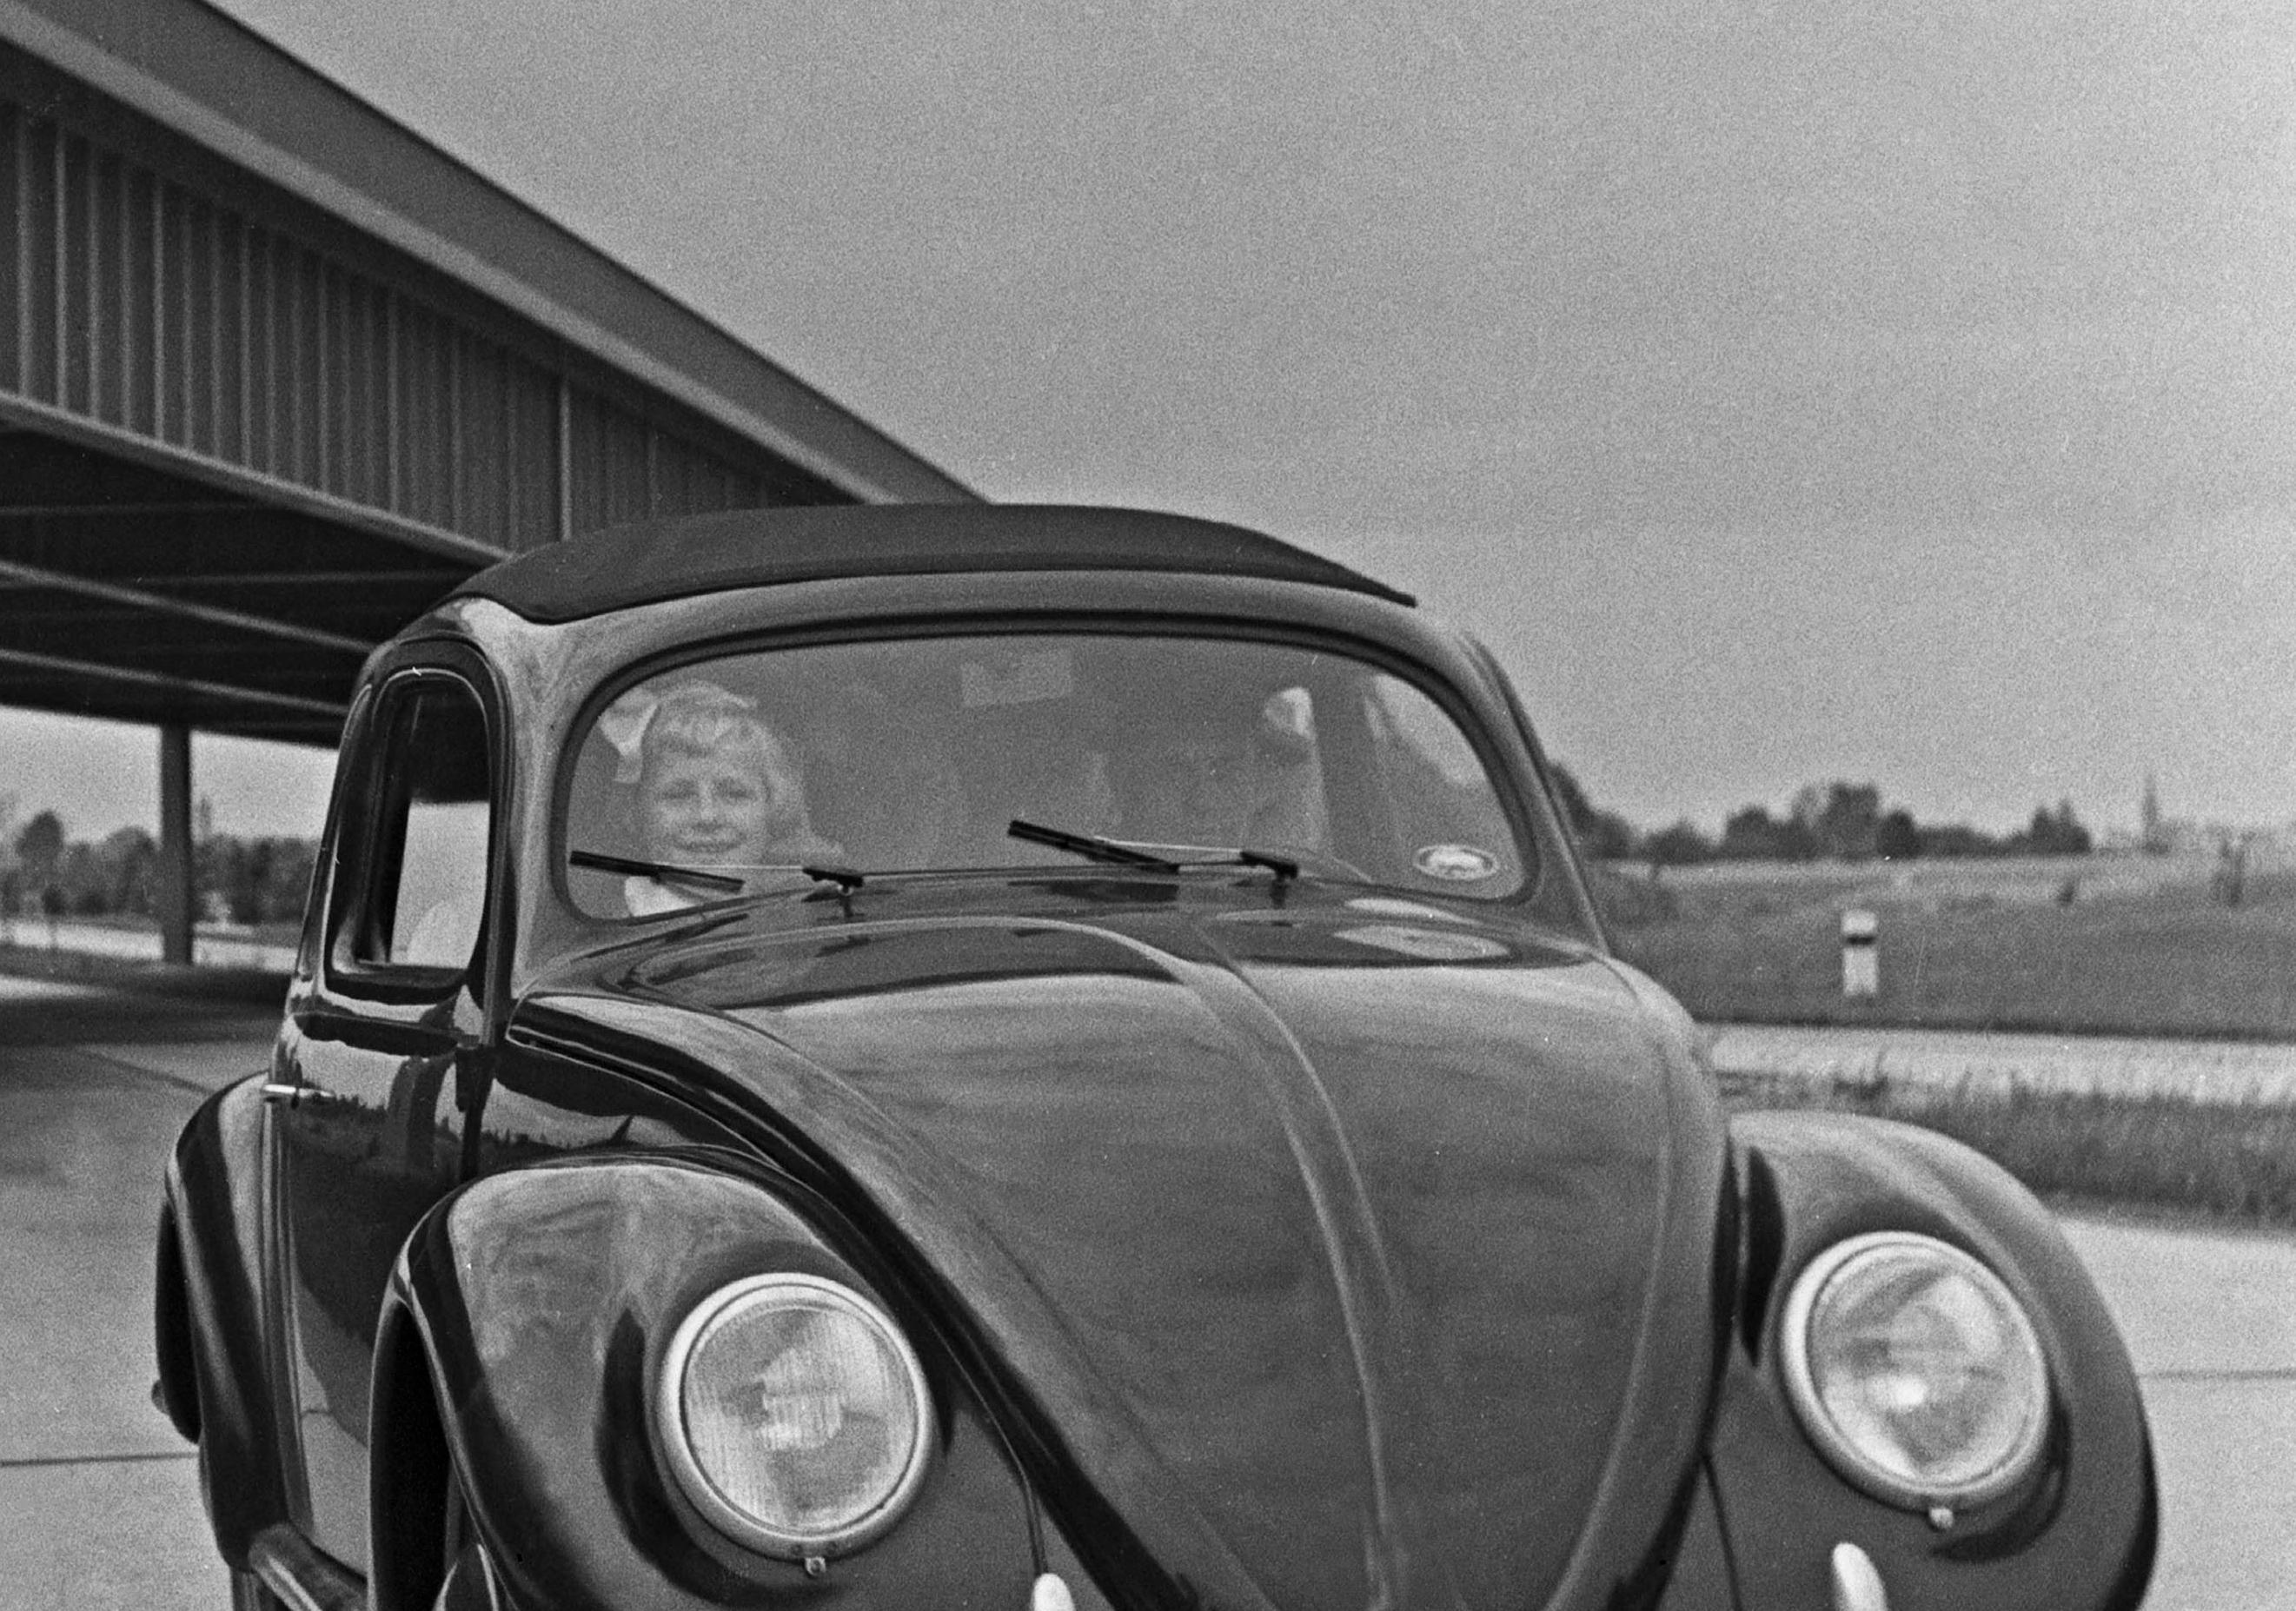 Le scarabée de Volkswagen sur le chemin de fer, Allemagne 1937 Imprimé plus tard  - Photograph de Karl Heinrich Lämmel